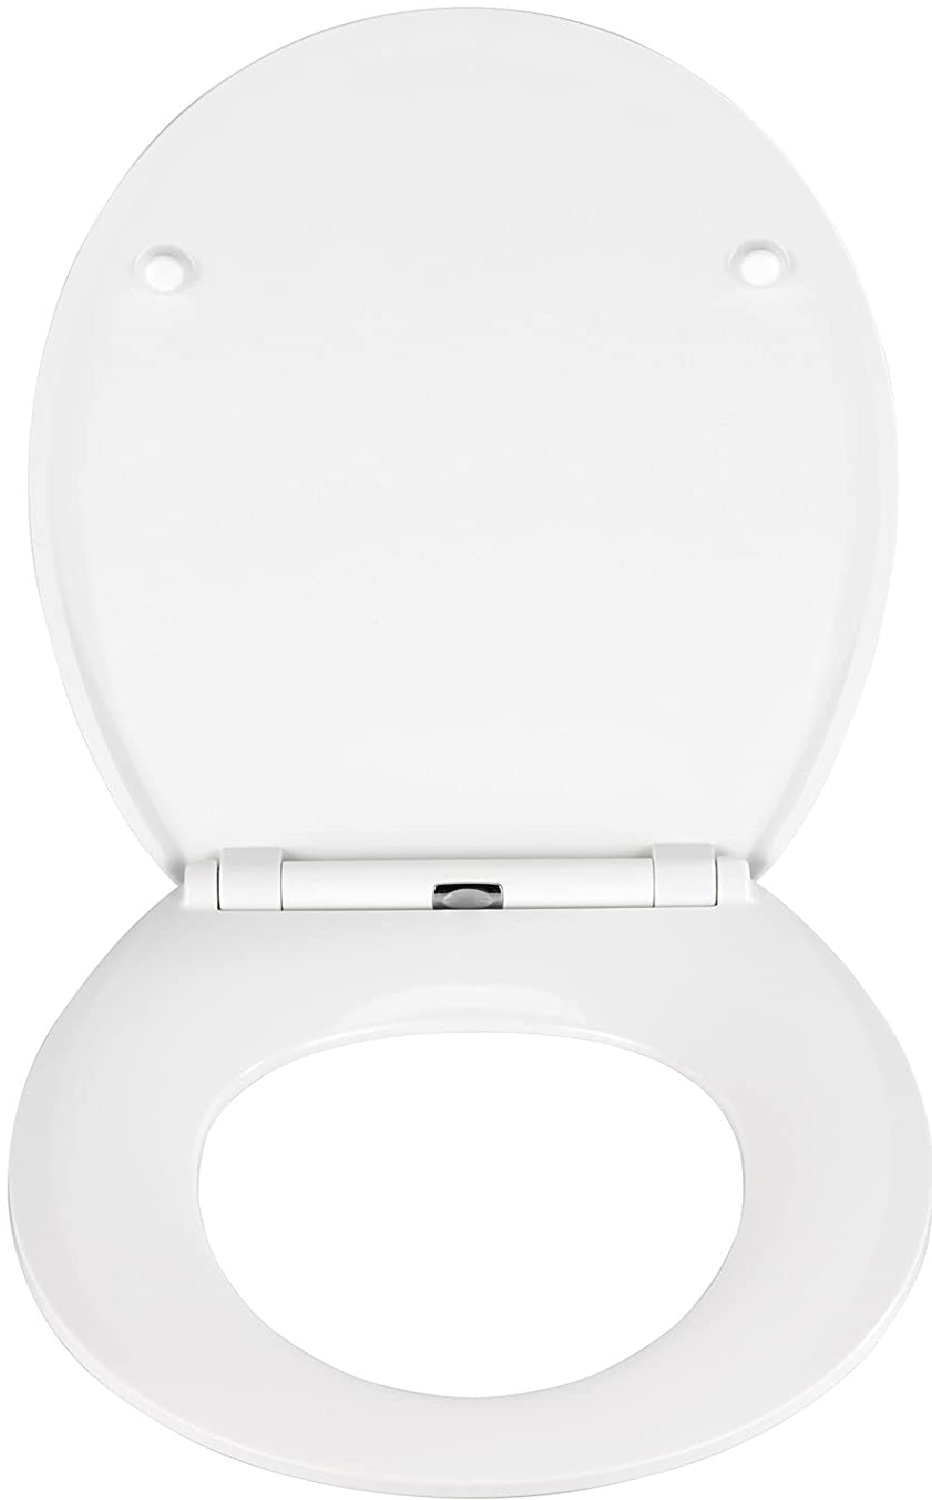 Premium WC-Sitz Mora - Antibakterieller Toiletten-Sitz mit Absenkautomatik, rostfreie Fix-Clip Hygiene Edelstahlbefestigung, Duroplast, 37 x 44.5 cm, Weiß